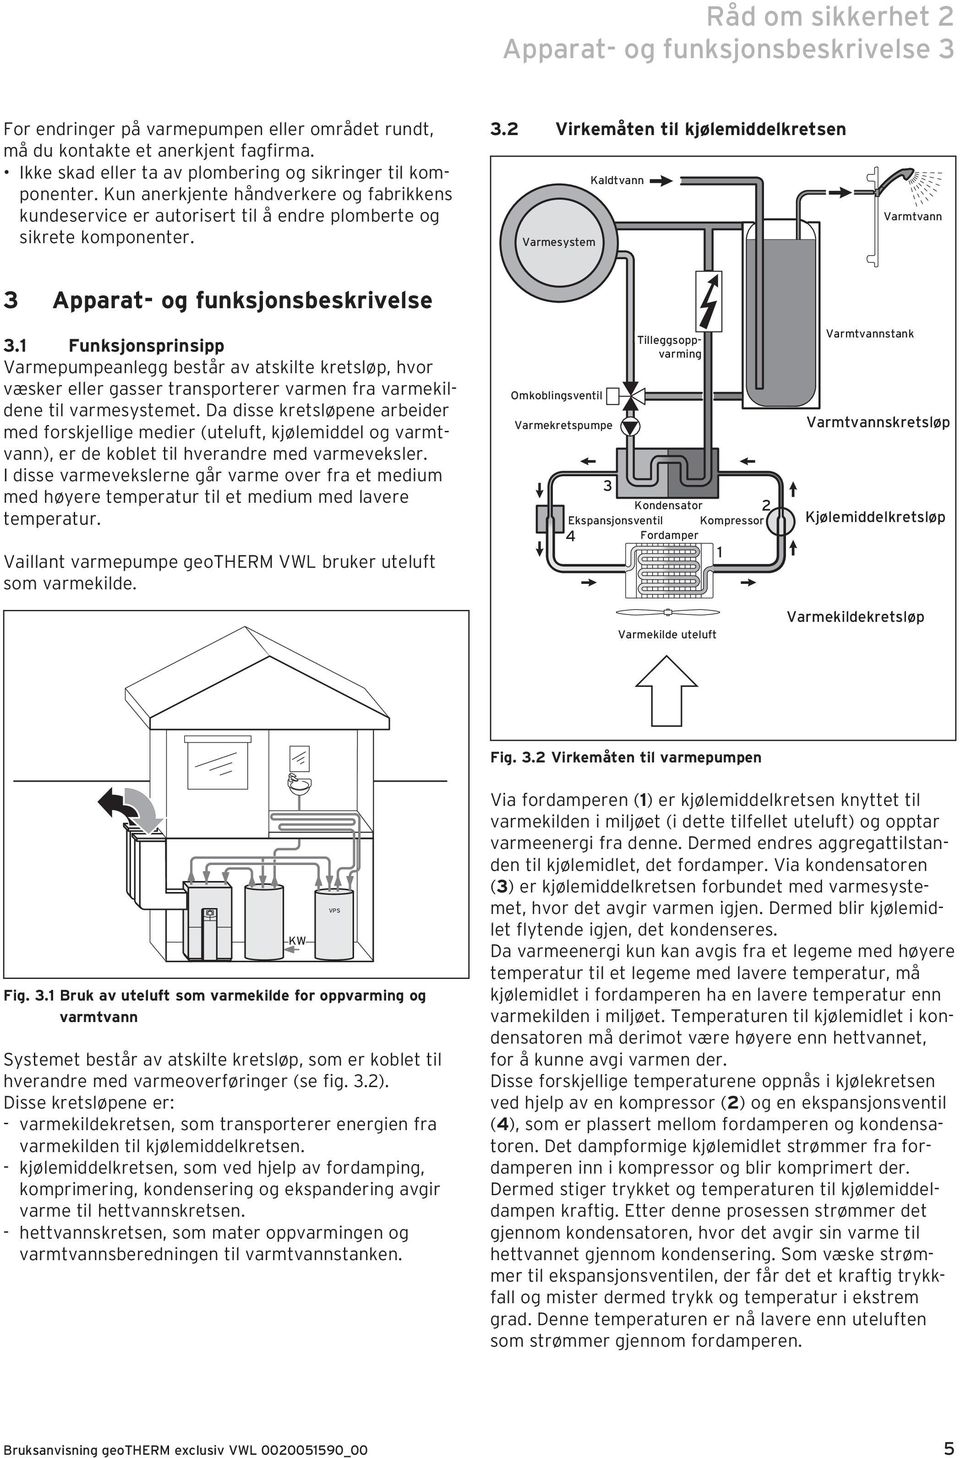 2 Virkemåten til kjølemiddelkretsen Varmesystem Kaldtvann Varmtvann 3 Apparat- og funksjonsbeskrivelse 3.